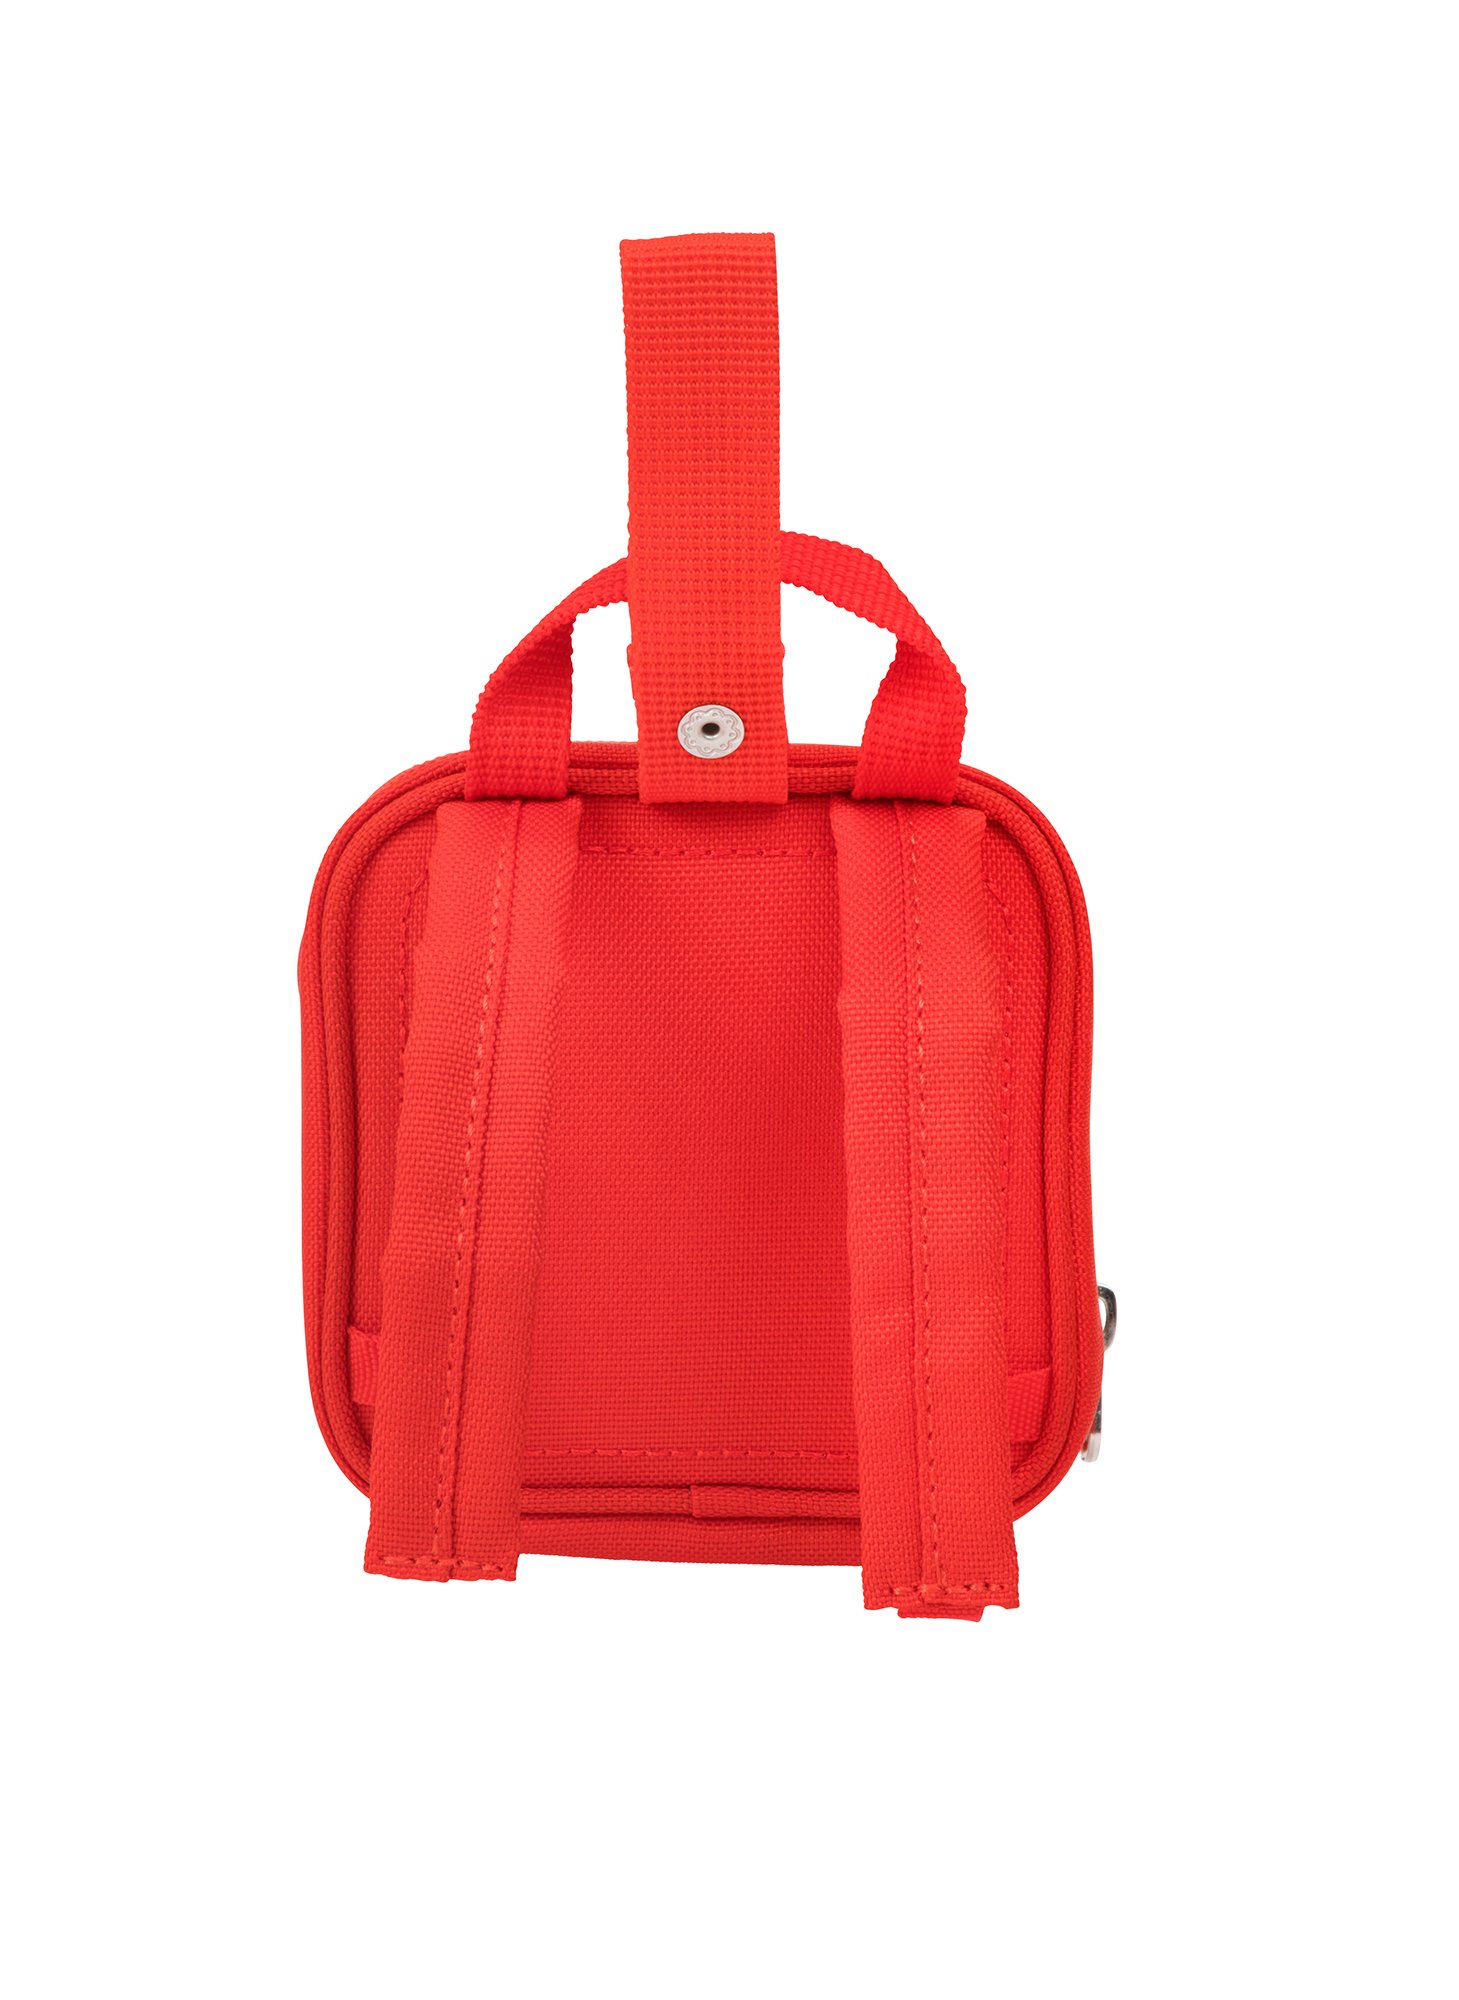 LEGO Kids Brick Mini Backpack, Red, One Size